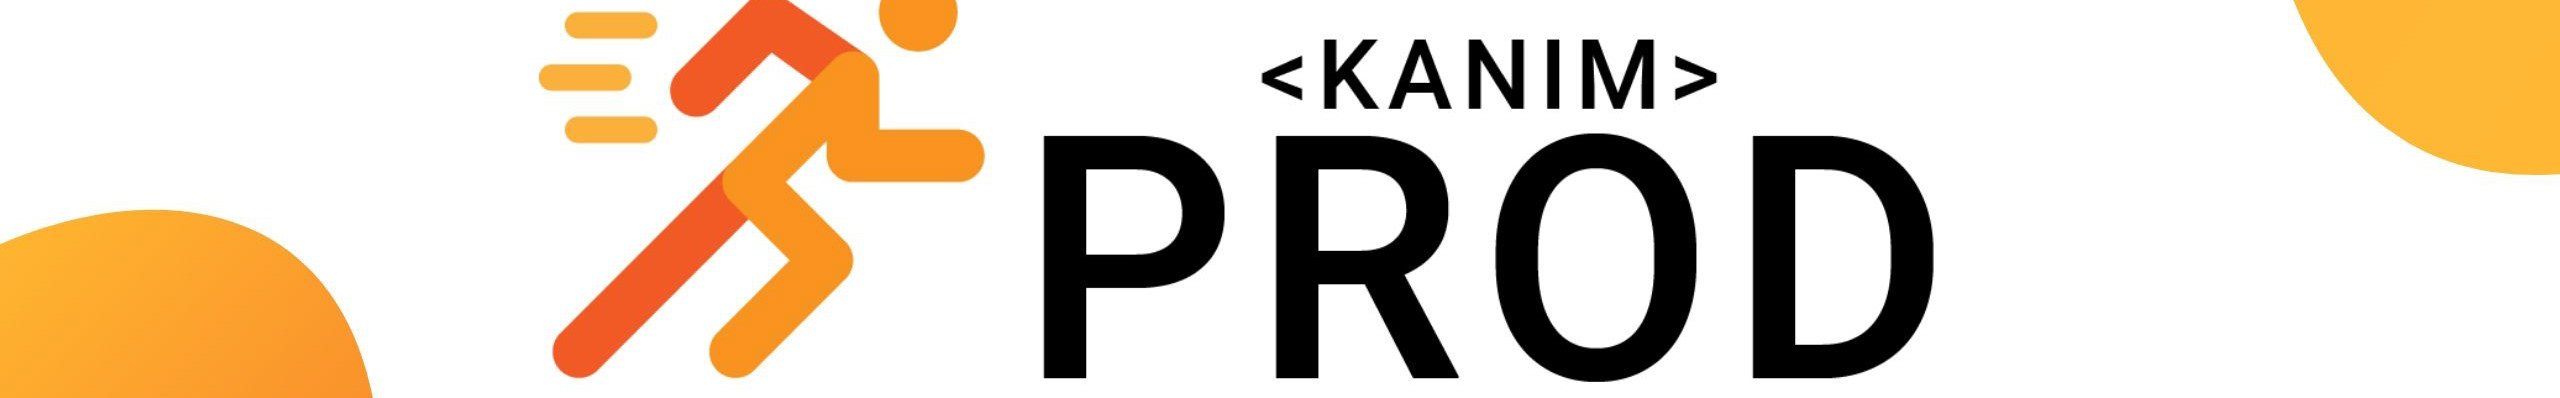 Kanim PROD's profile banner